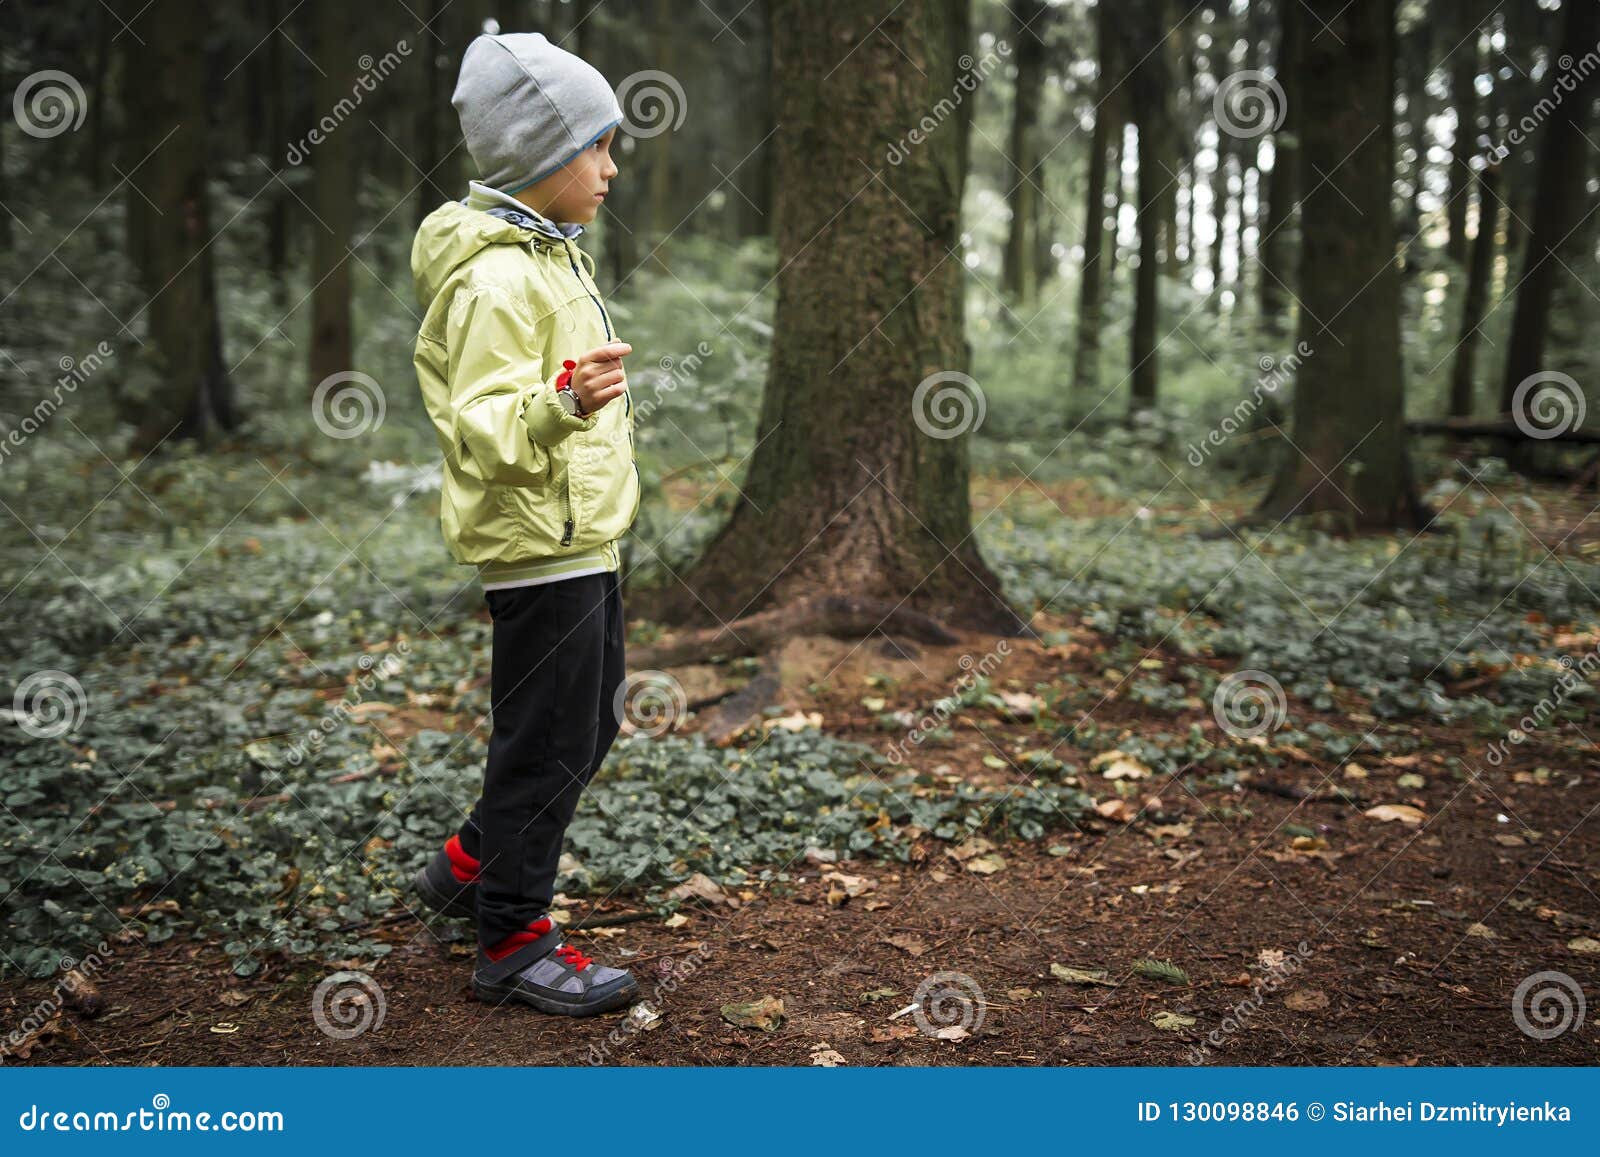 Оставила детей в лесу. Мальчик в лесу. Маленький мальчик в лесу. Мальчик заблудился в лесу. Хлопчик в лесу.